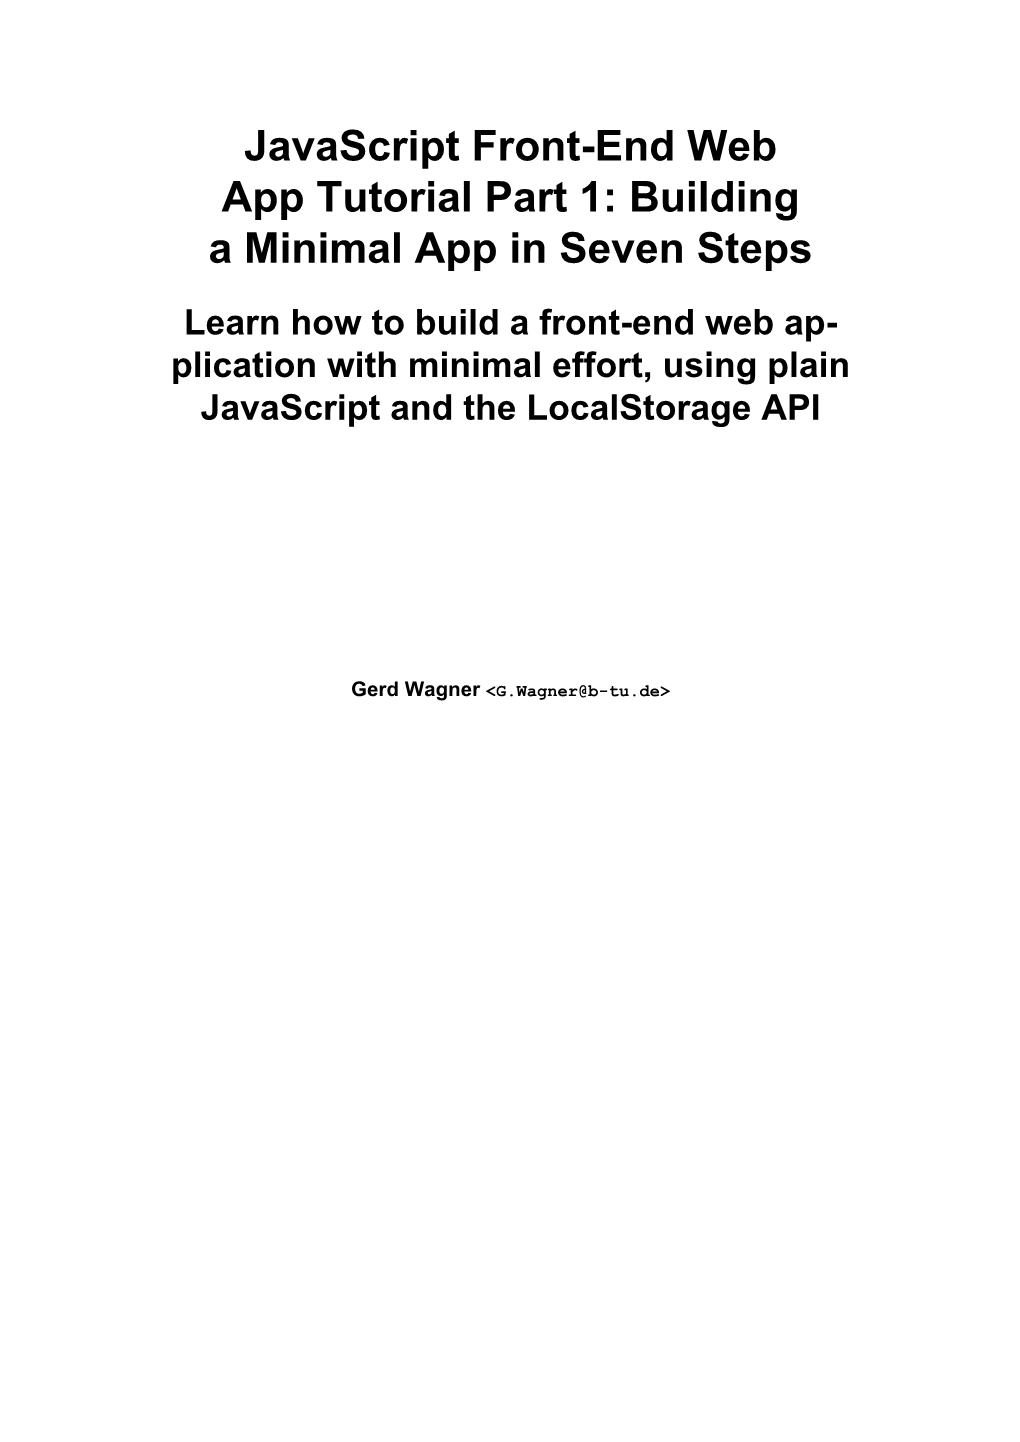 Javascript Front-End Web App Tutorial Part 1